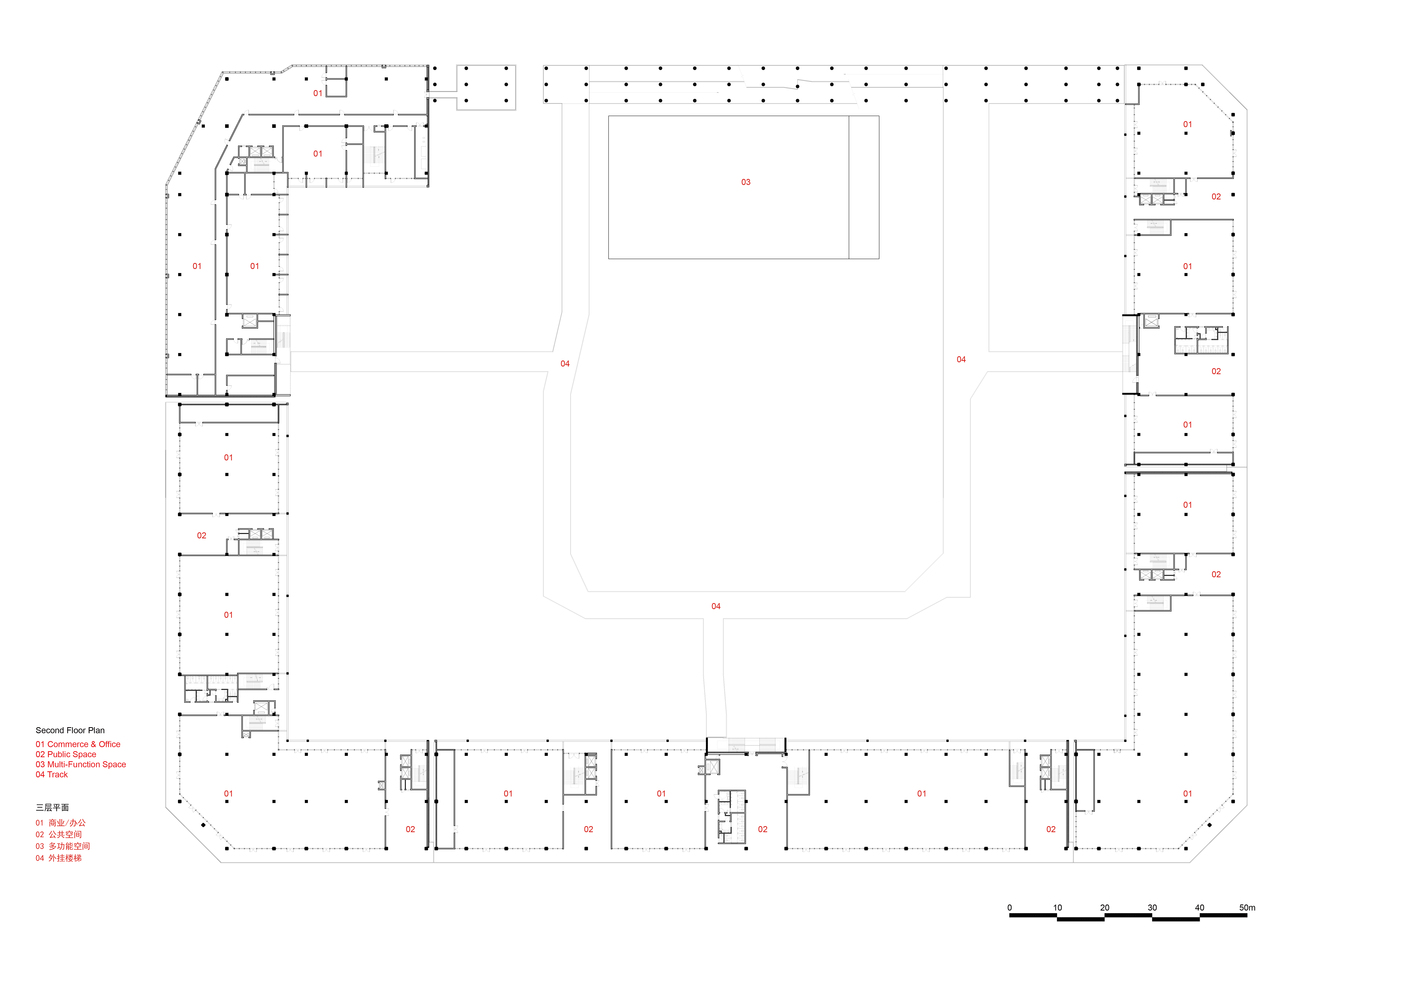 6.1_Yard_Drawing04_Second_Floor_Plan.jpg